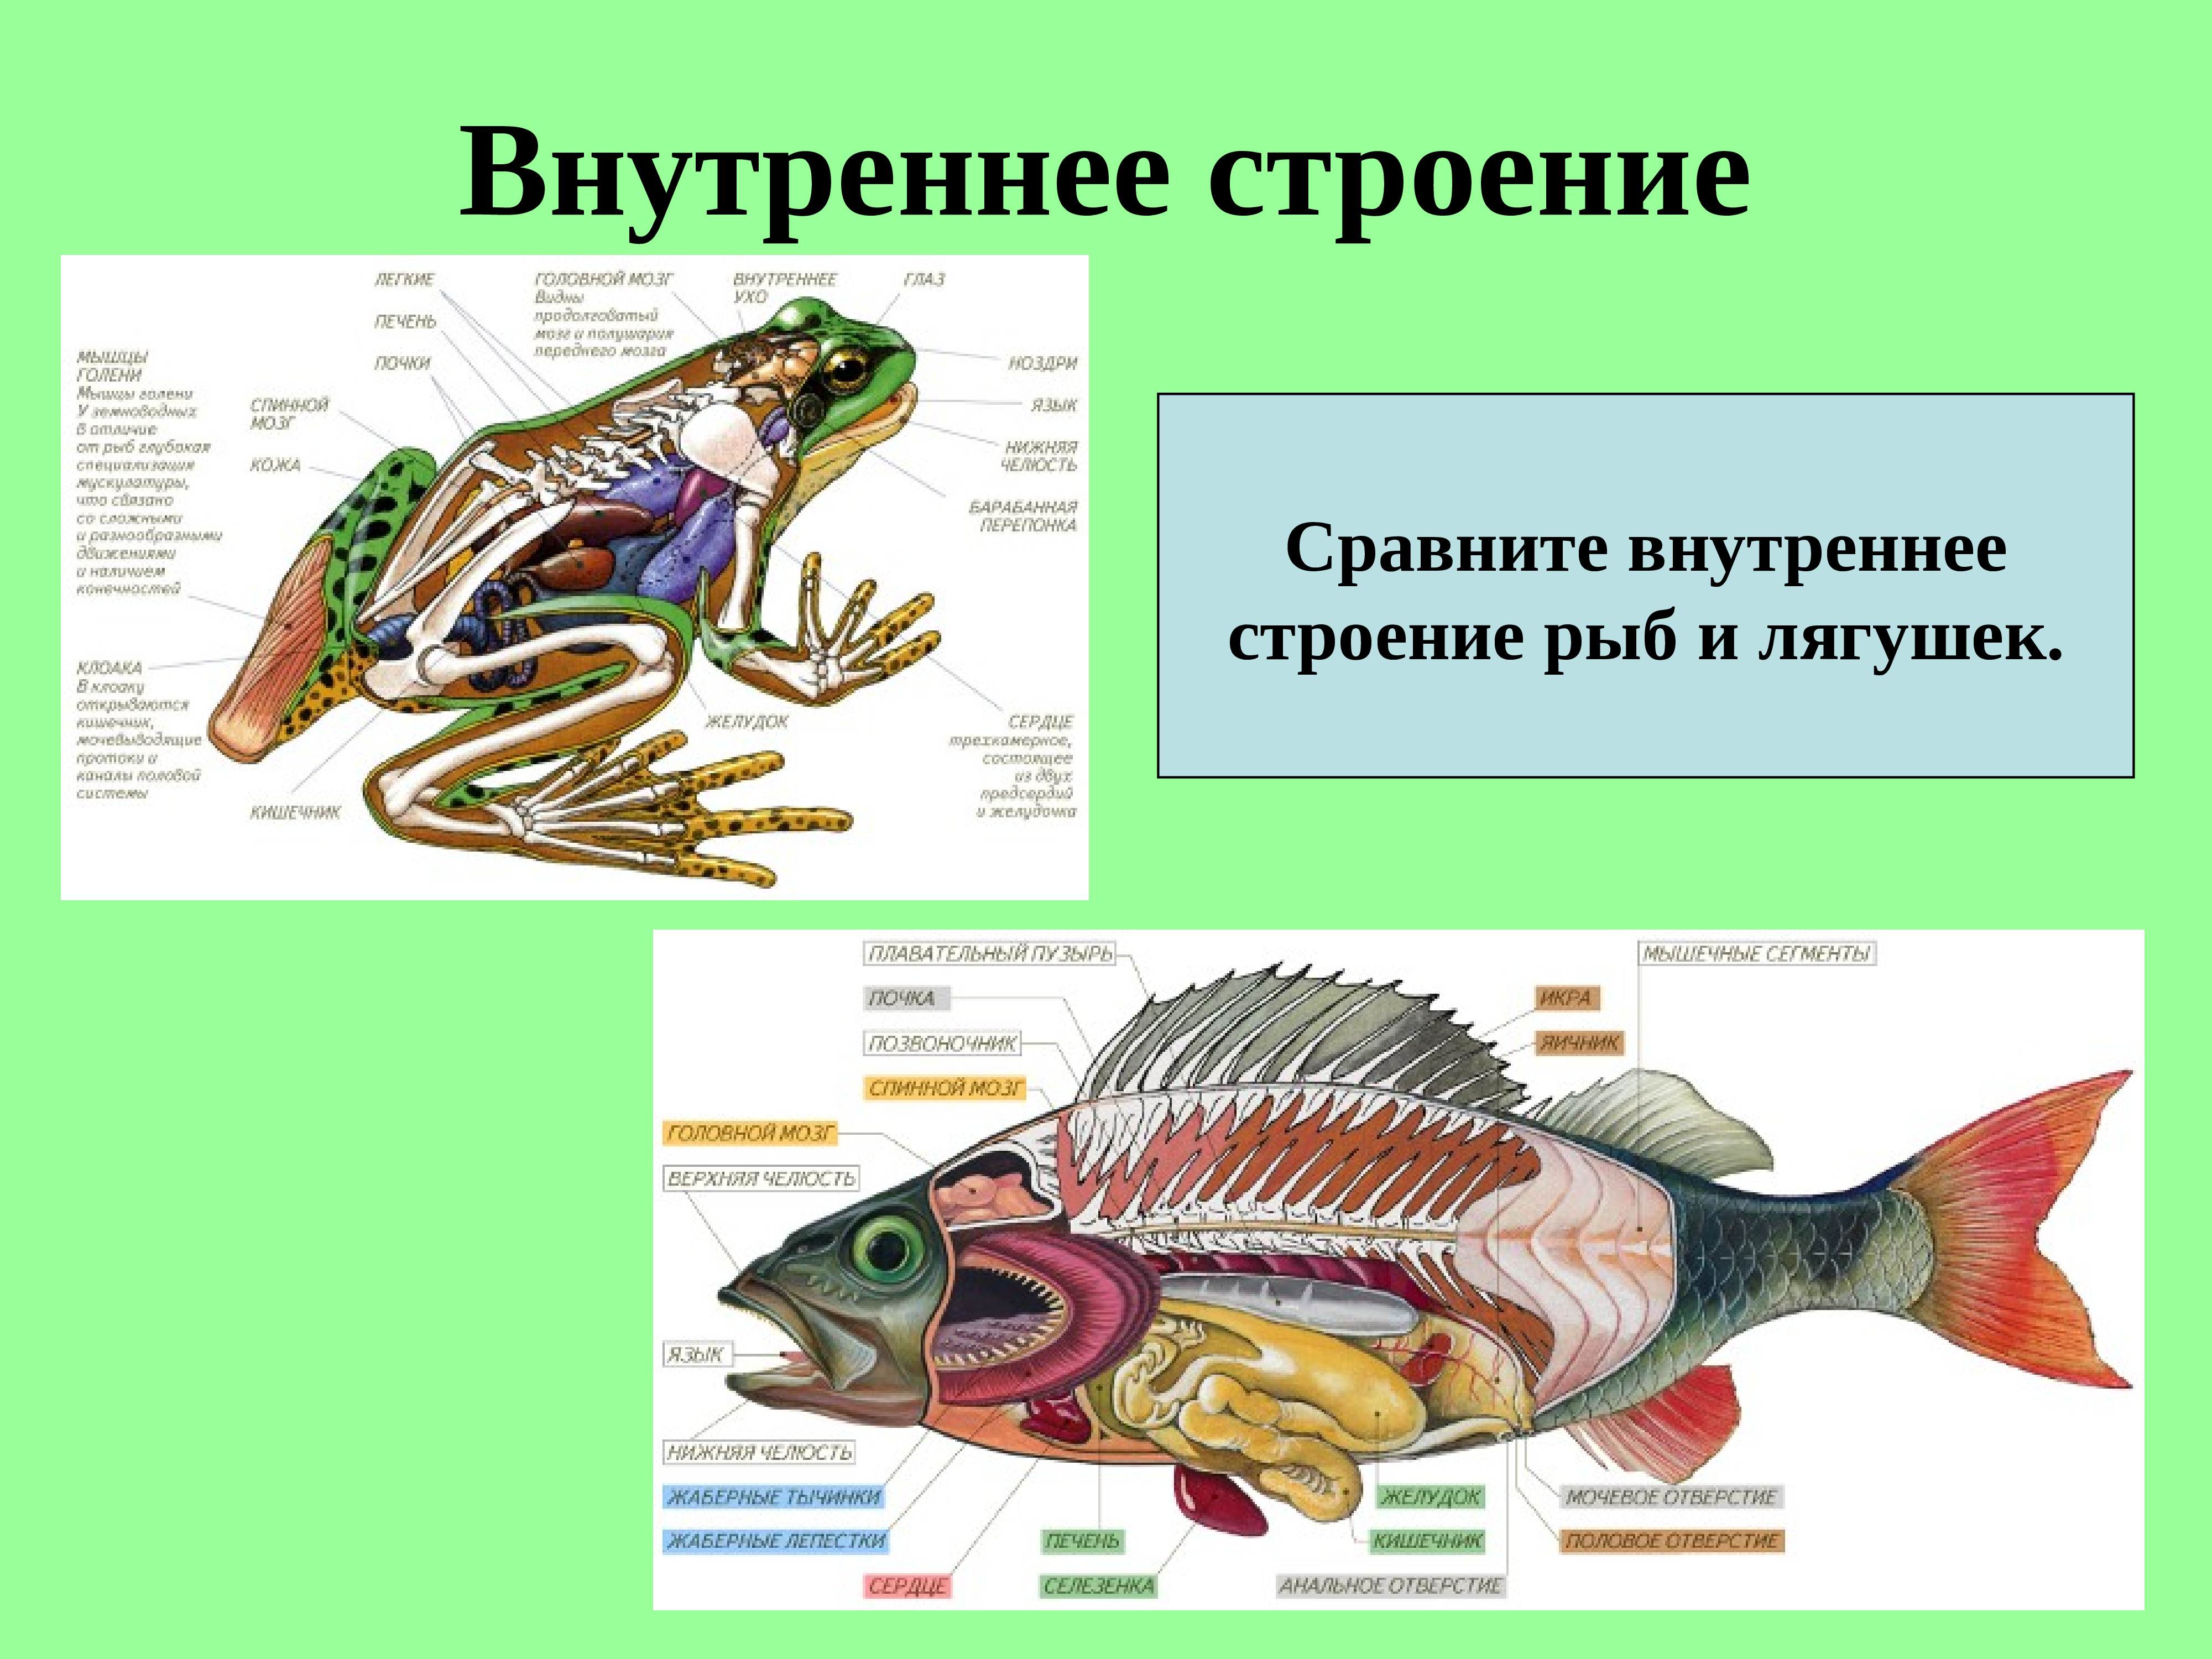 Различие лягушки и рыбы. Внутреннее строение лягушки. Внутреннее строение рыб и земноводных. Строение земноводных и рыб. Внутреннее строение рыбы.